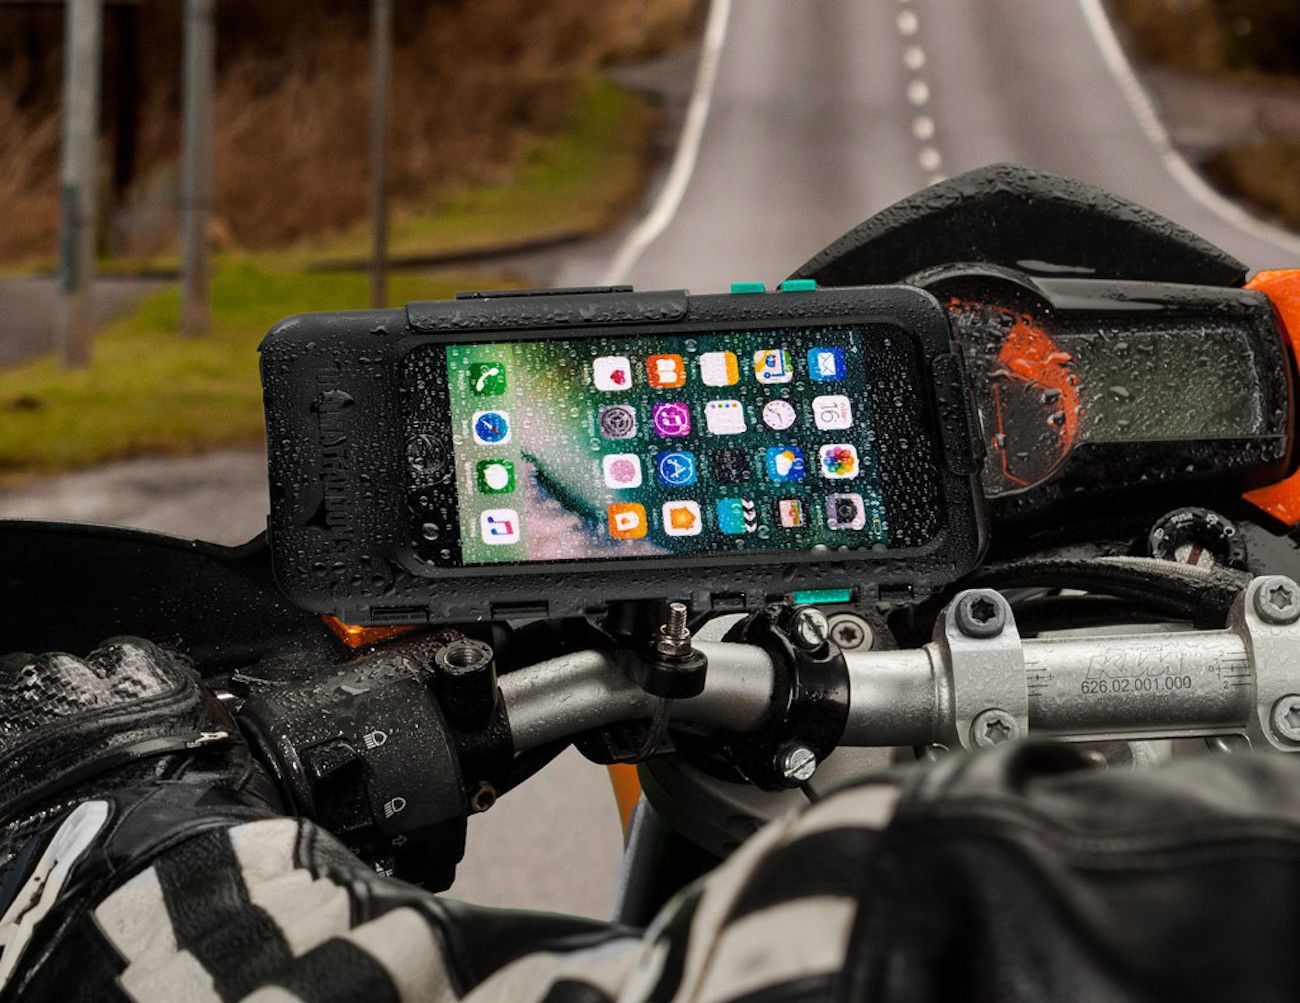 Ultimateaddons iPhone Motorcycle Mount